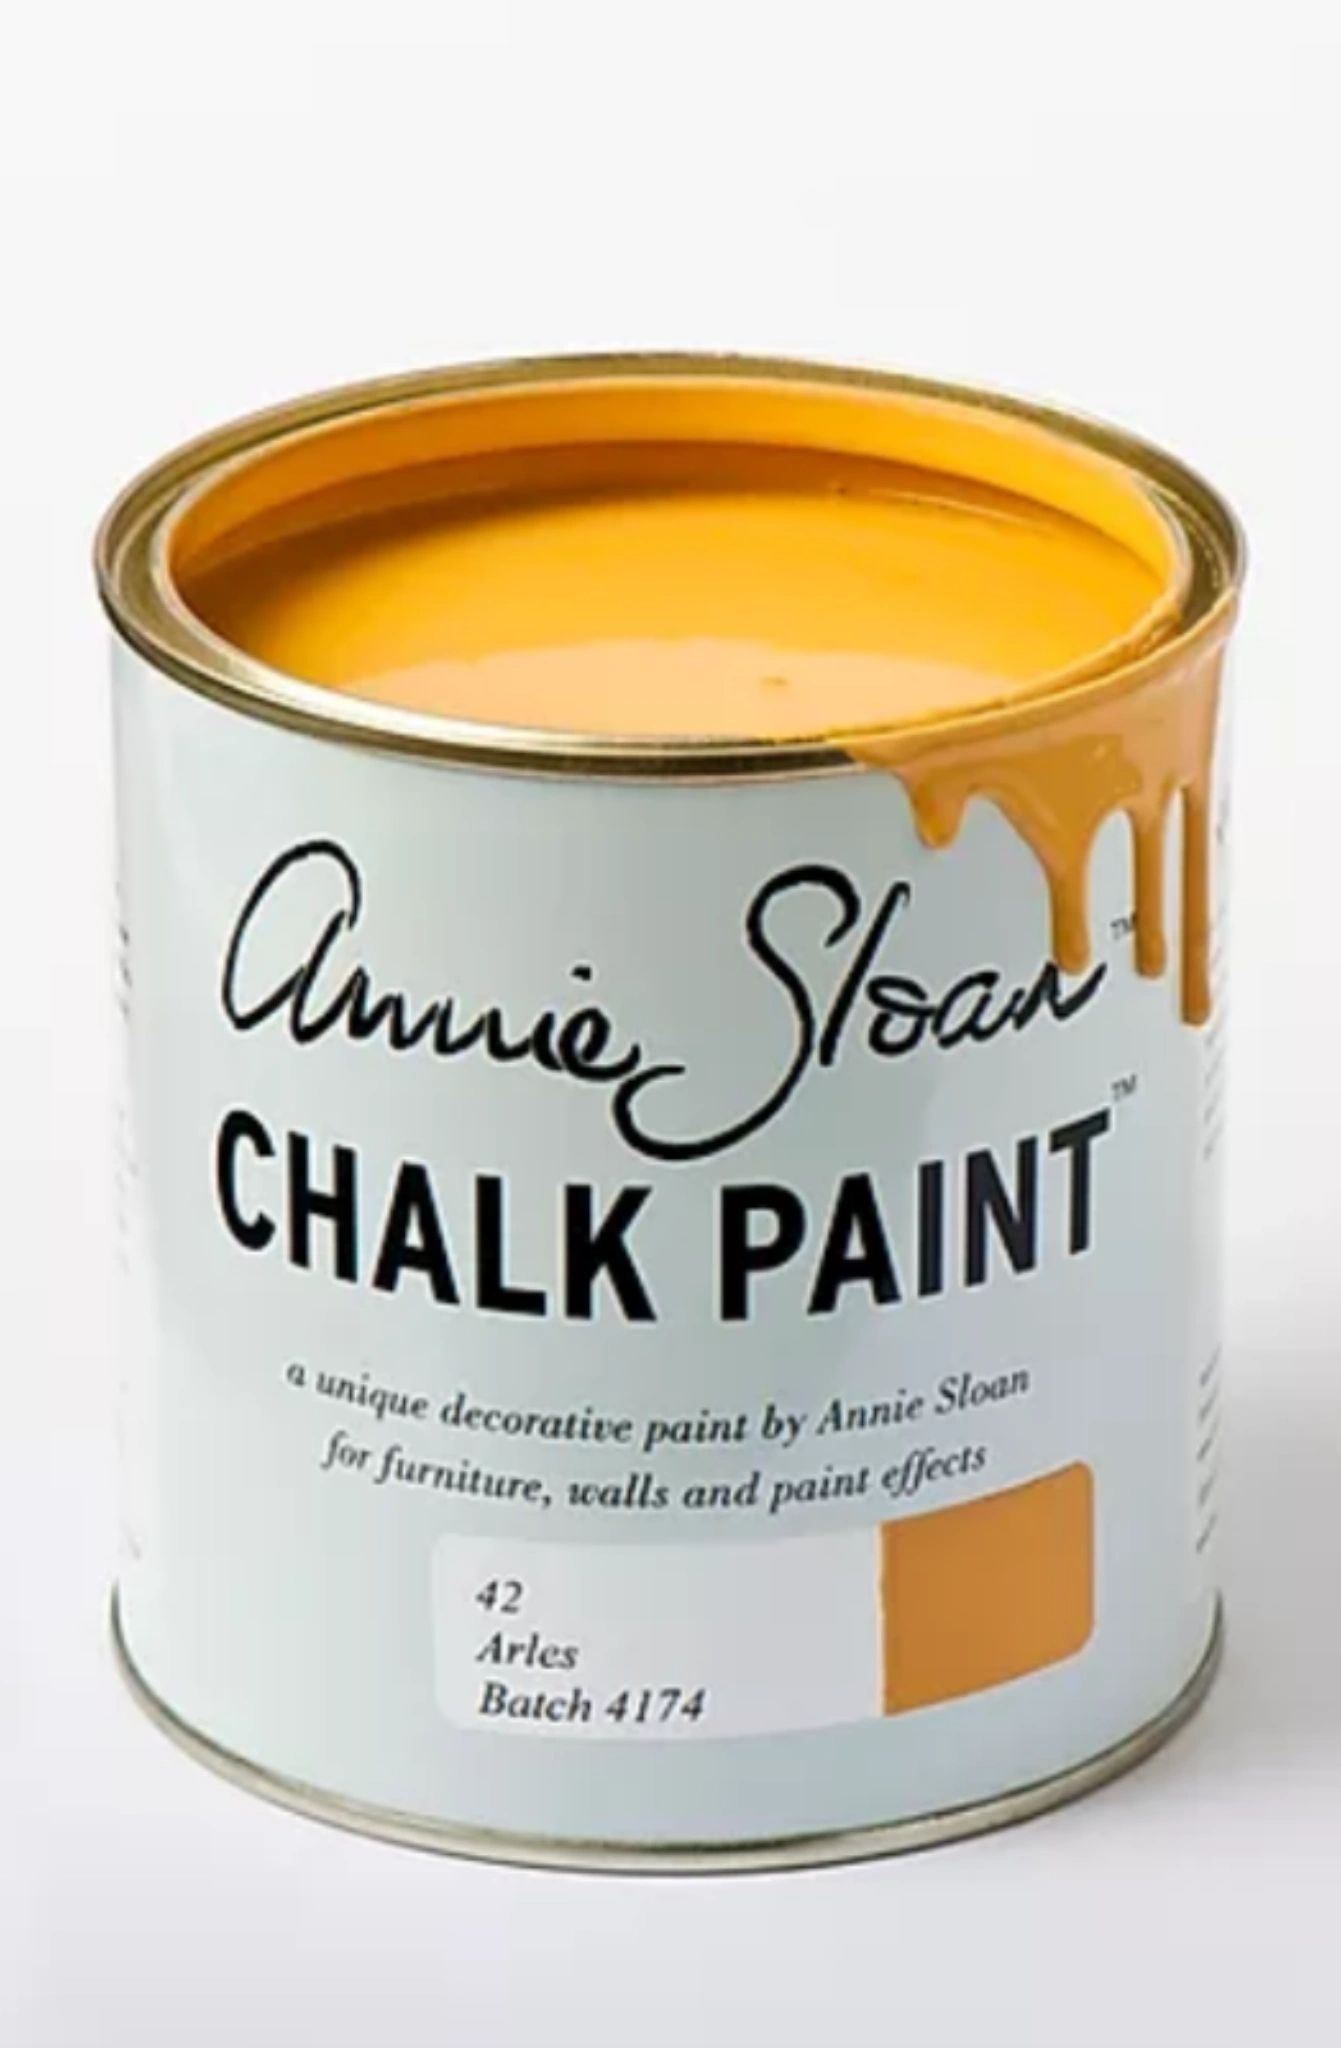 Annie Sloan Paint. Chalk Paint. Arles Batch